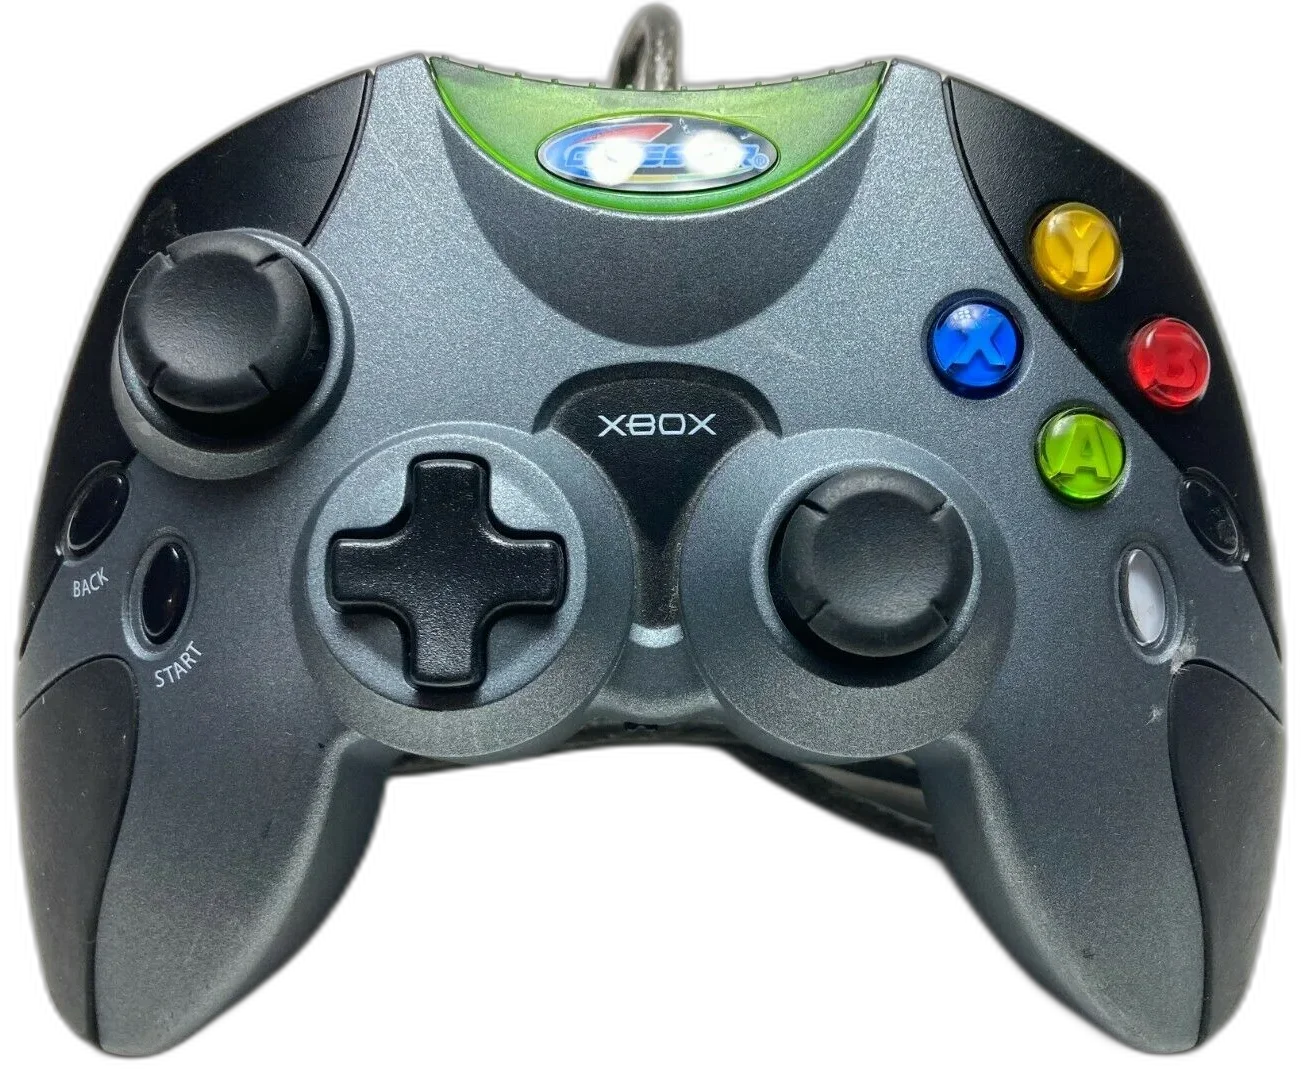  Radica Gamester Xbox Gray Controller